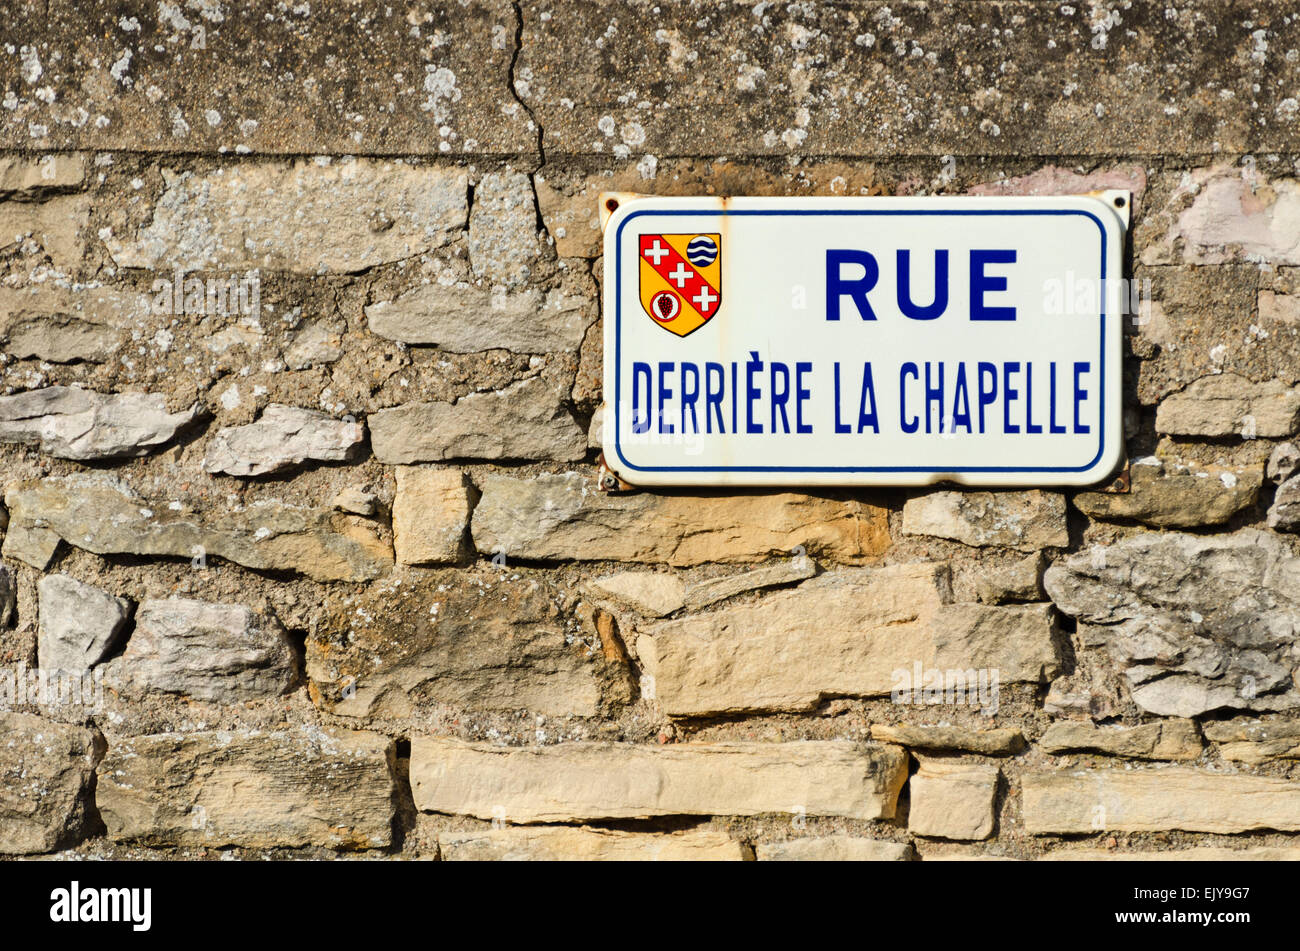 Les rues ont des noms très descriptive à Santenay, en Côte-d'or, France Banque D'Images